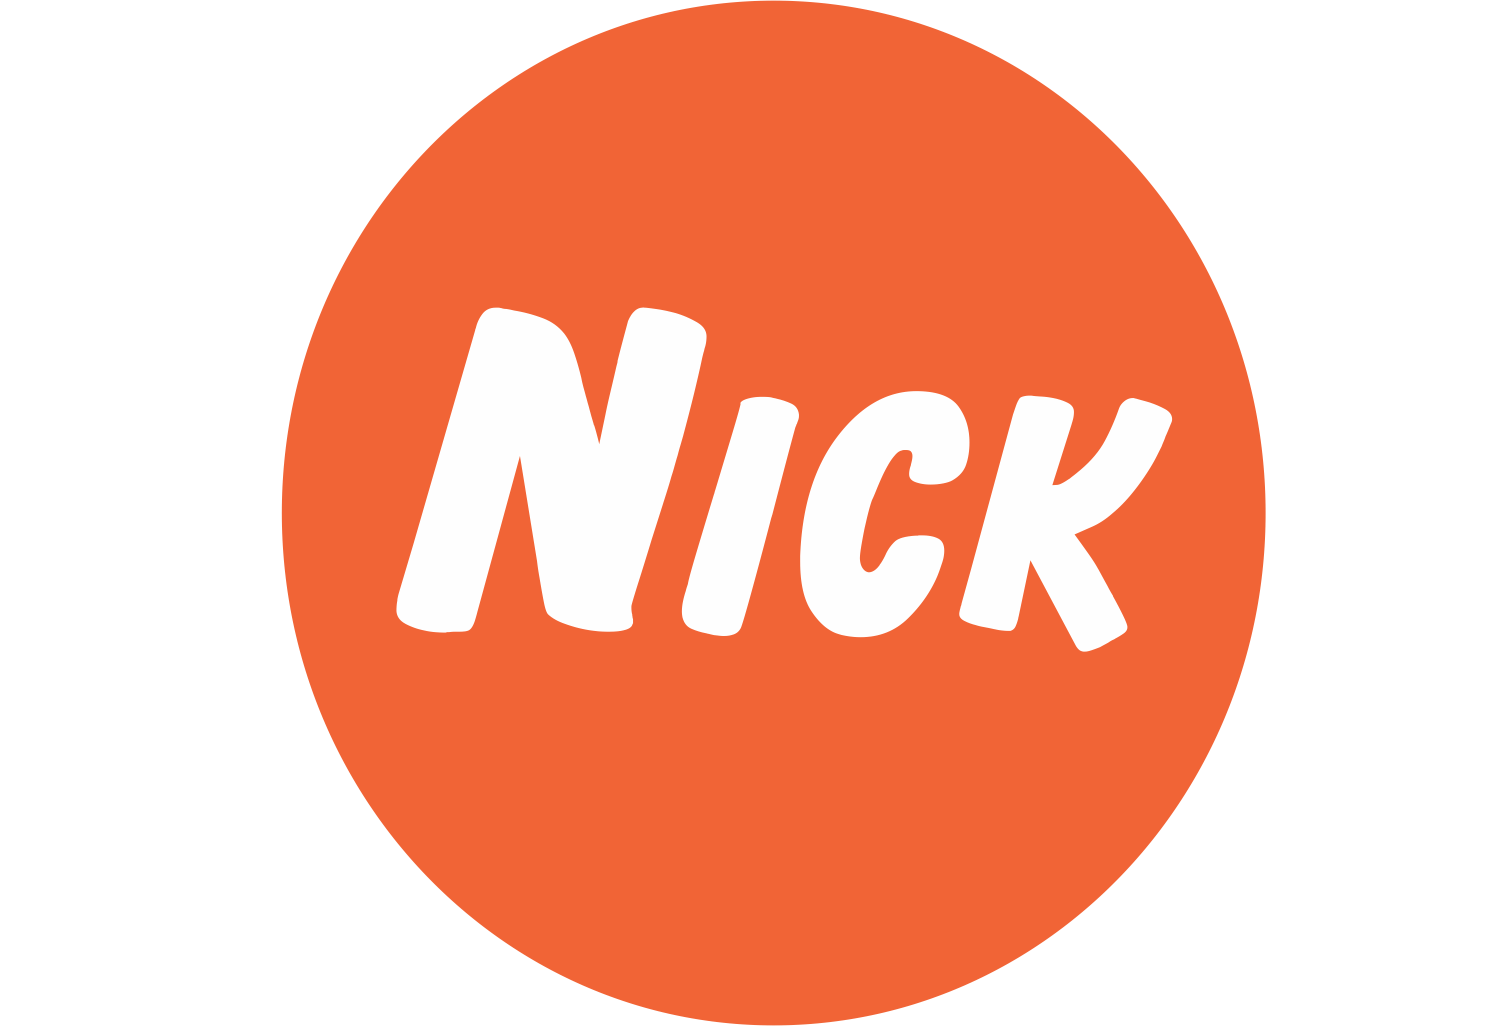 Nik. Nick канал. Nick Jr логотип. Nick dad. Nick dad логотип.